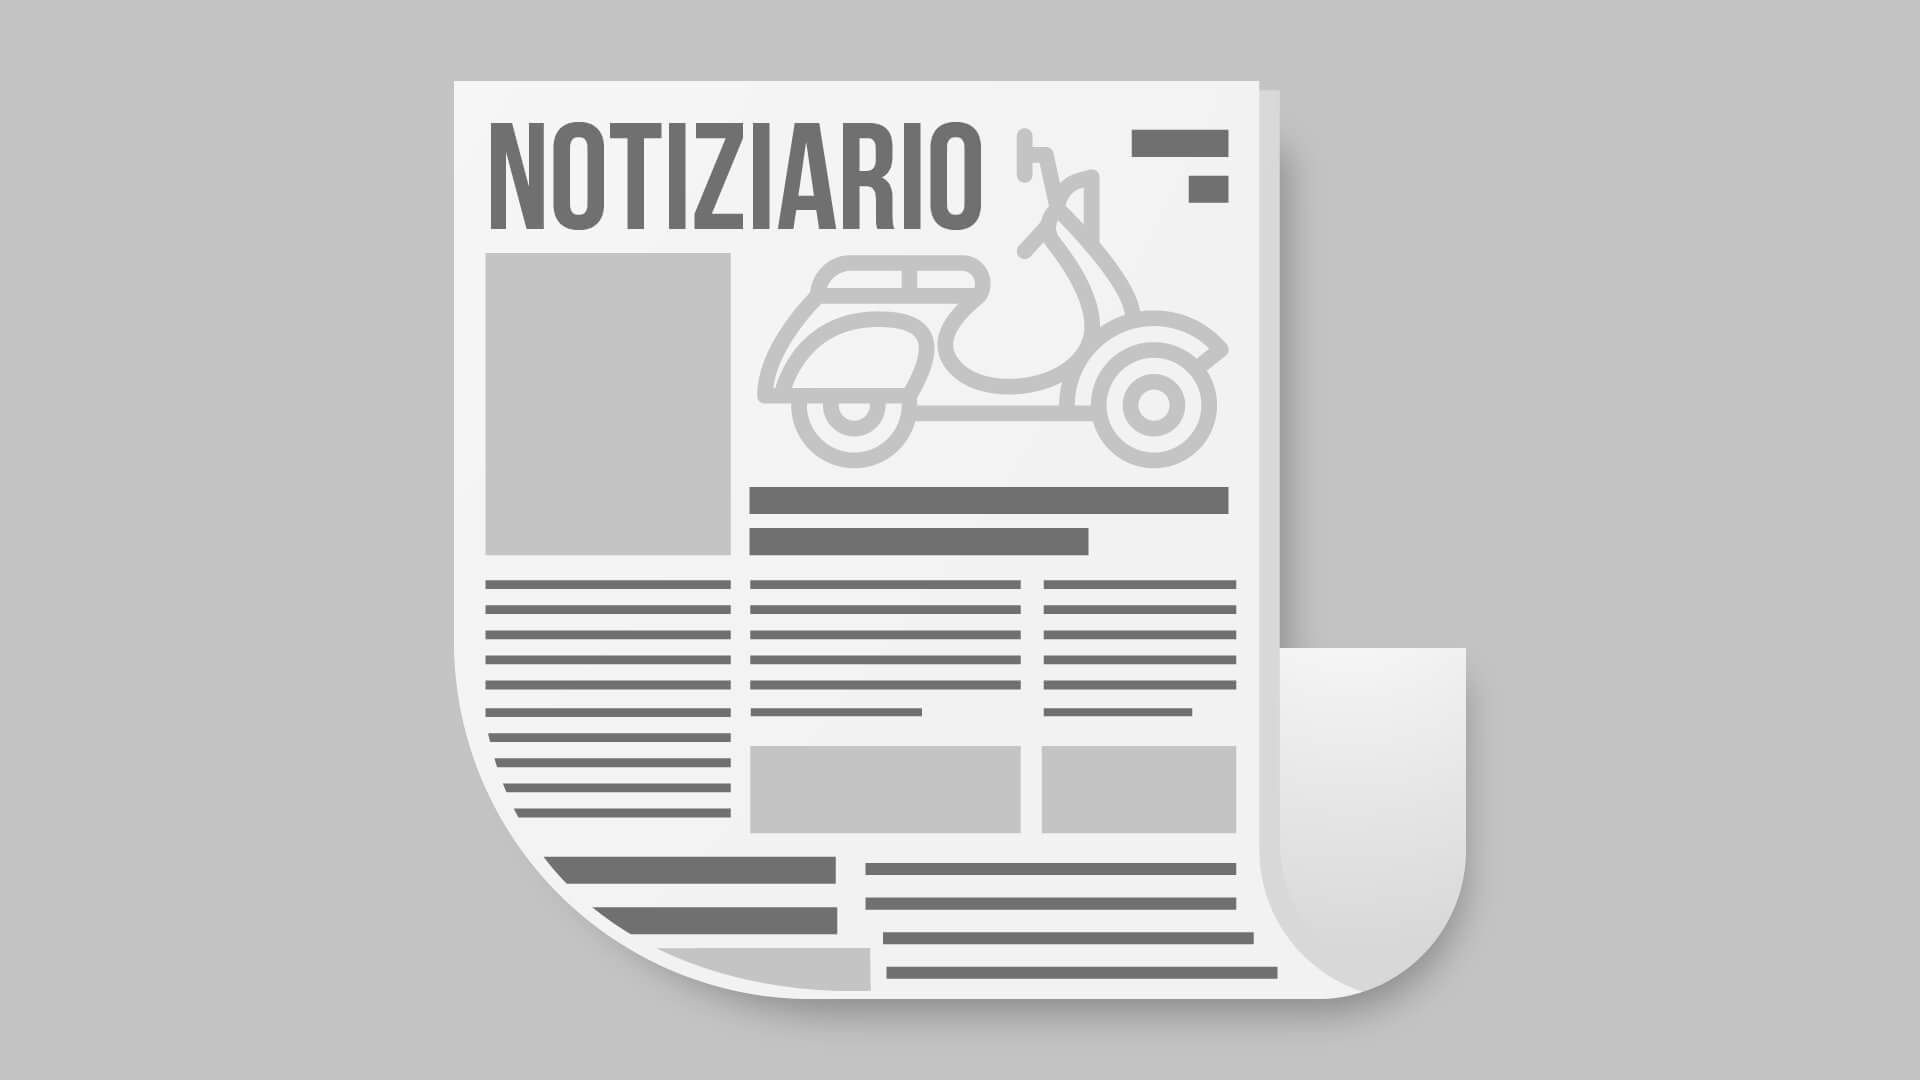 Featured image for “Notiziario n°70 Settembre/Dicembre 2020”